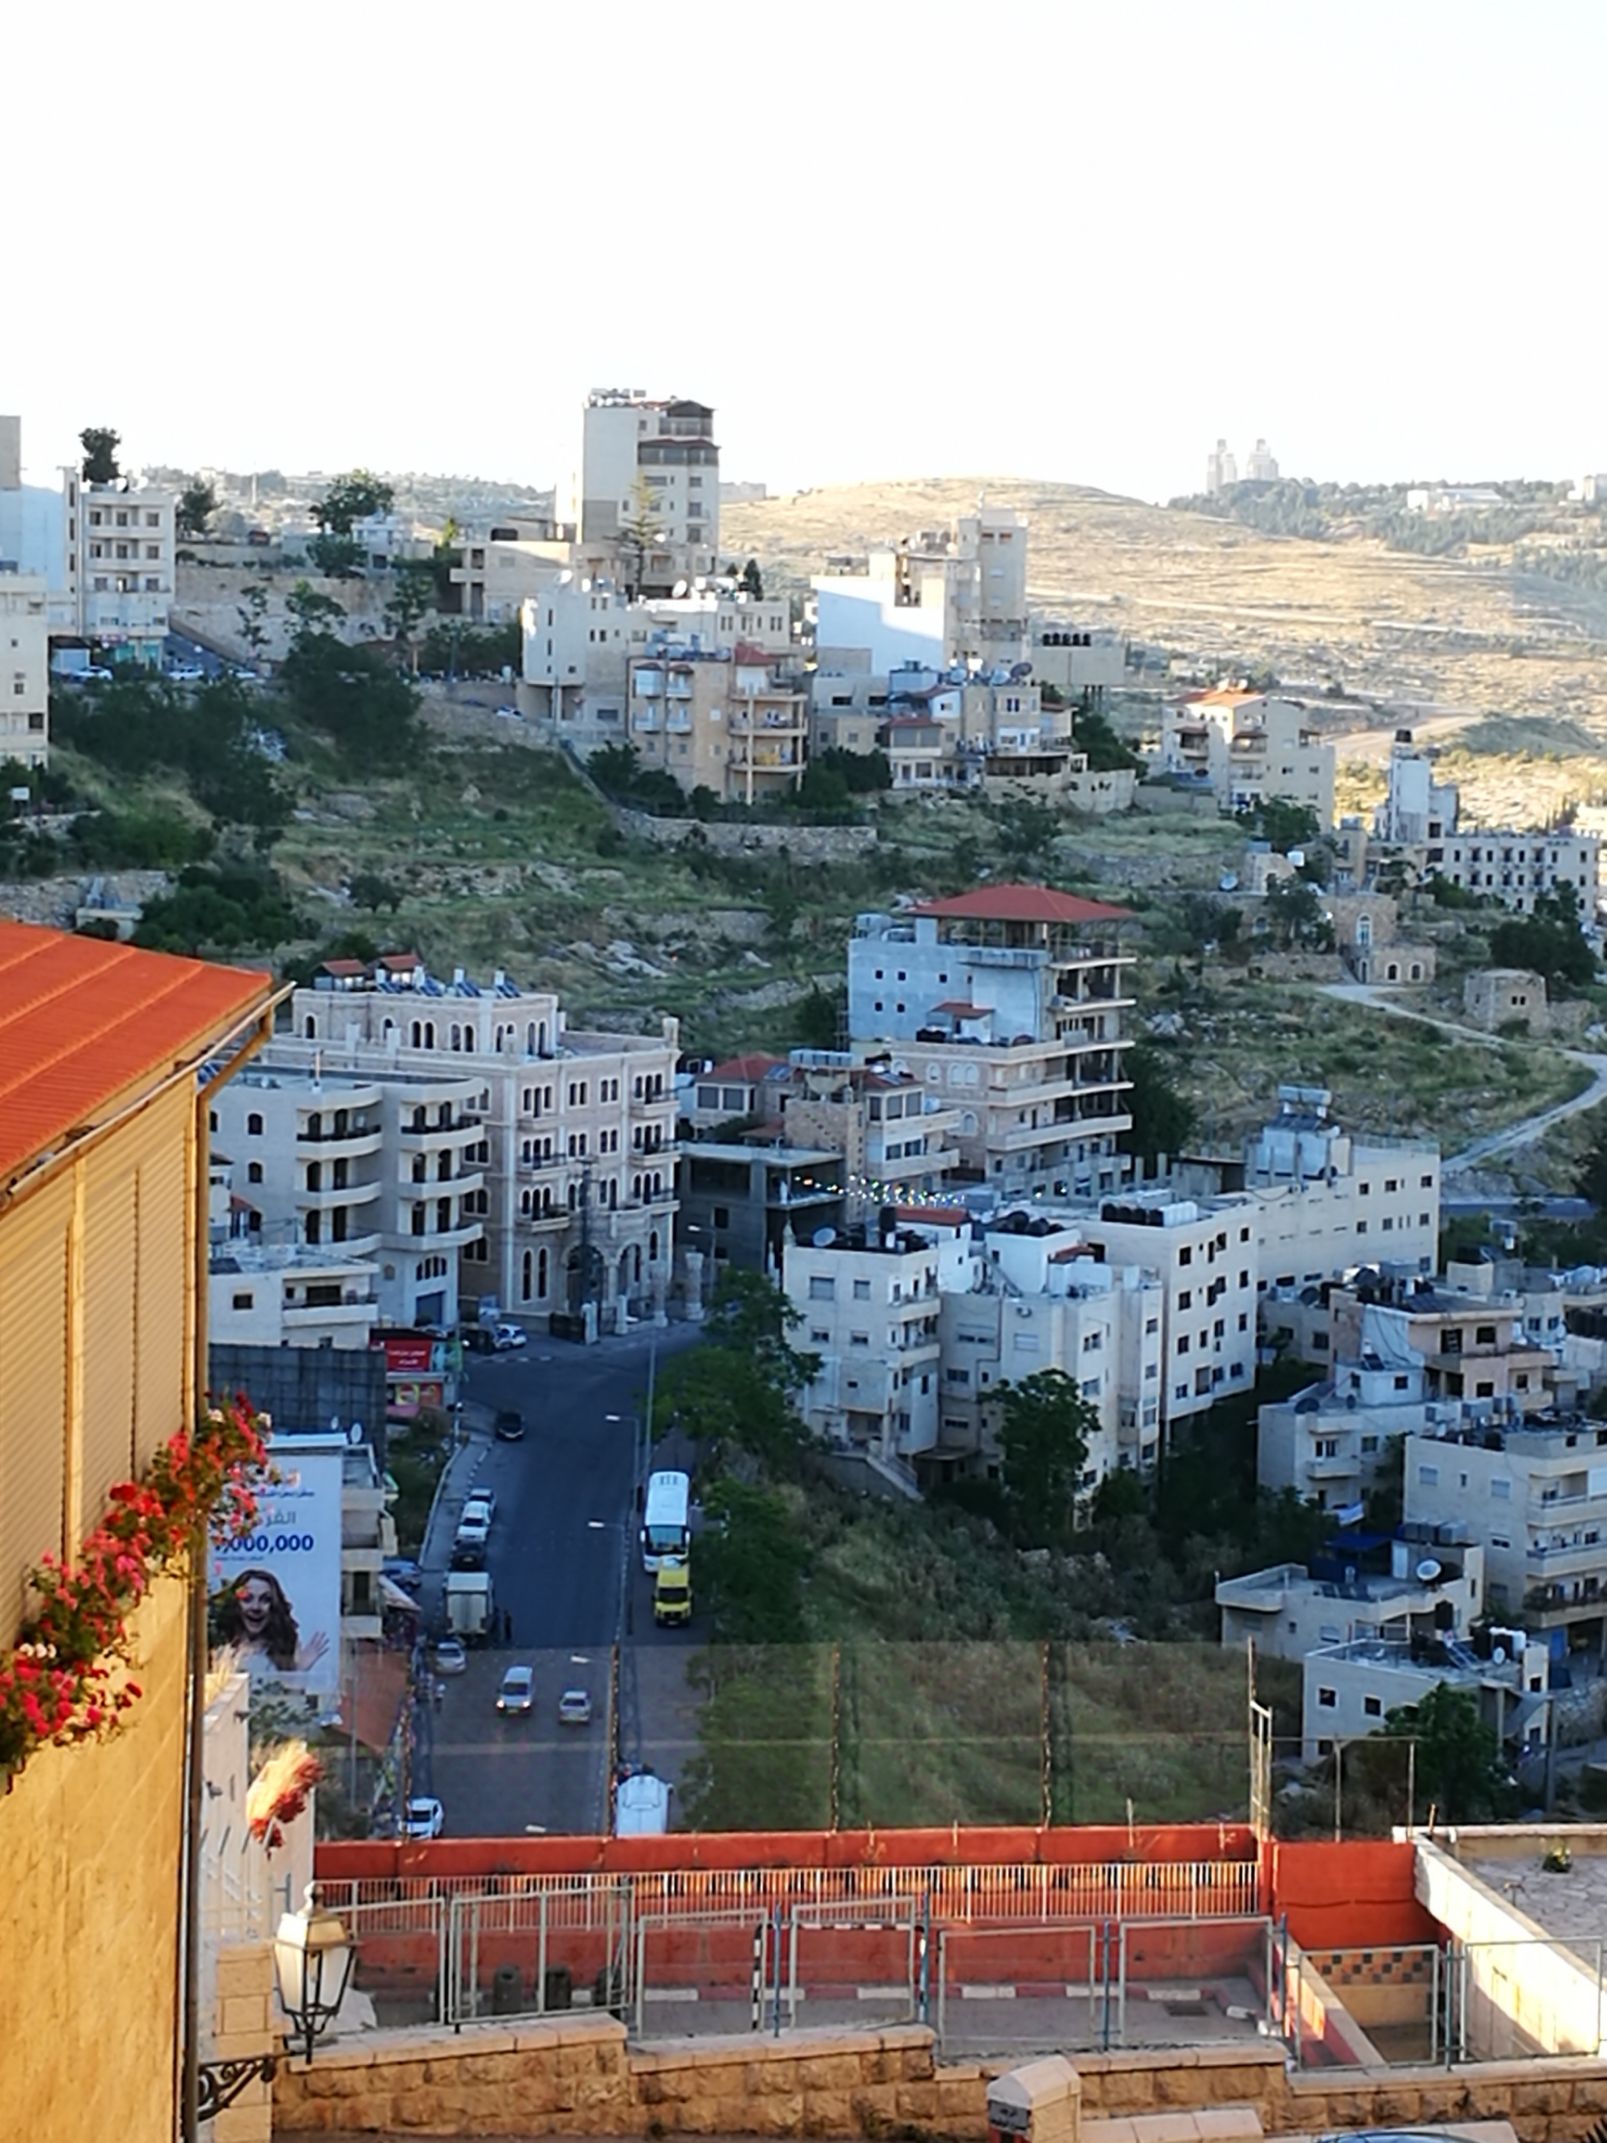 【巴勒斯坦】“圣城中的圣城”——伯利恒